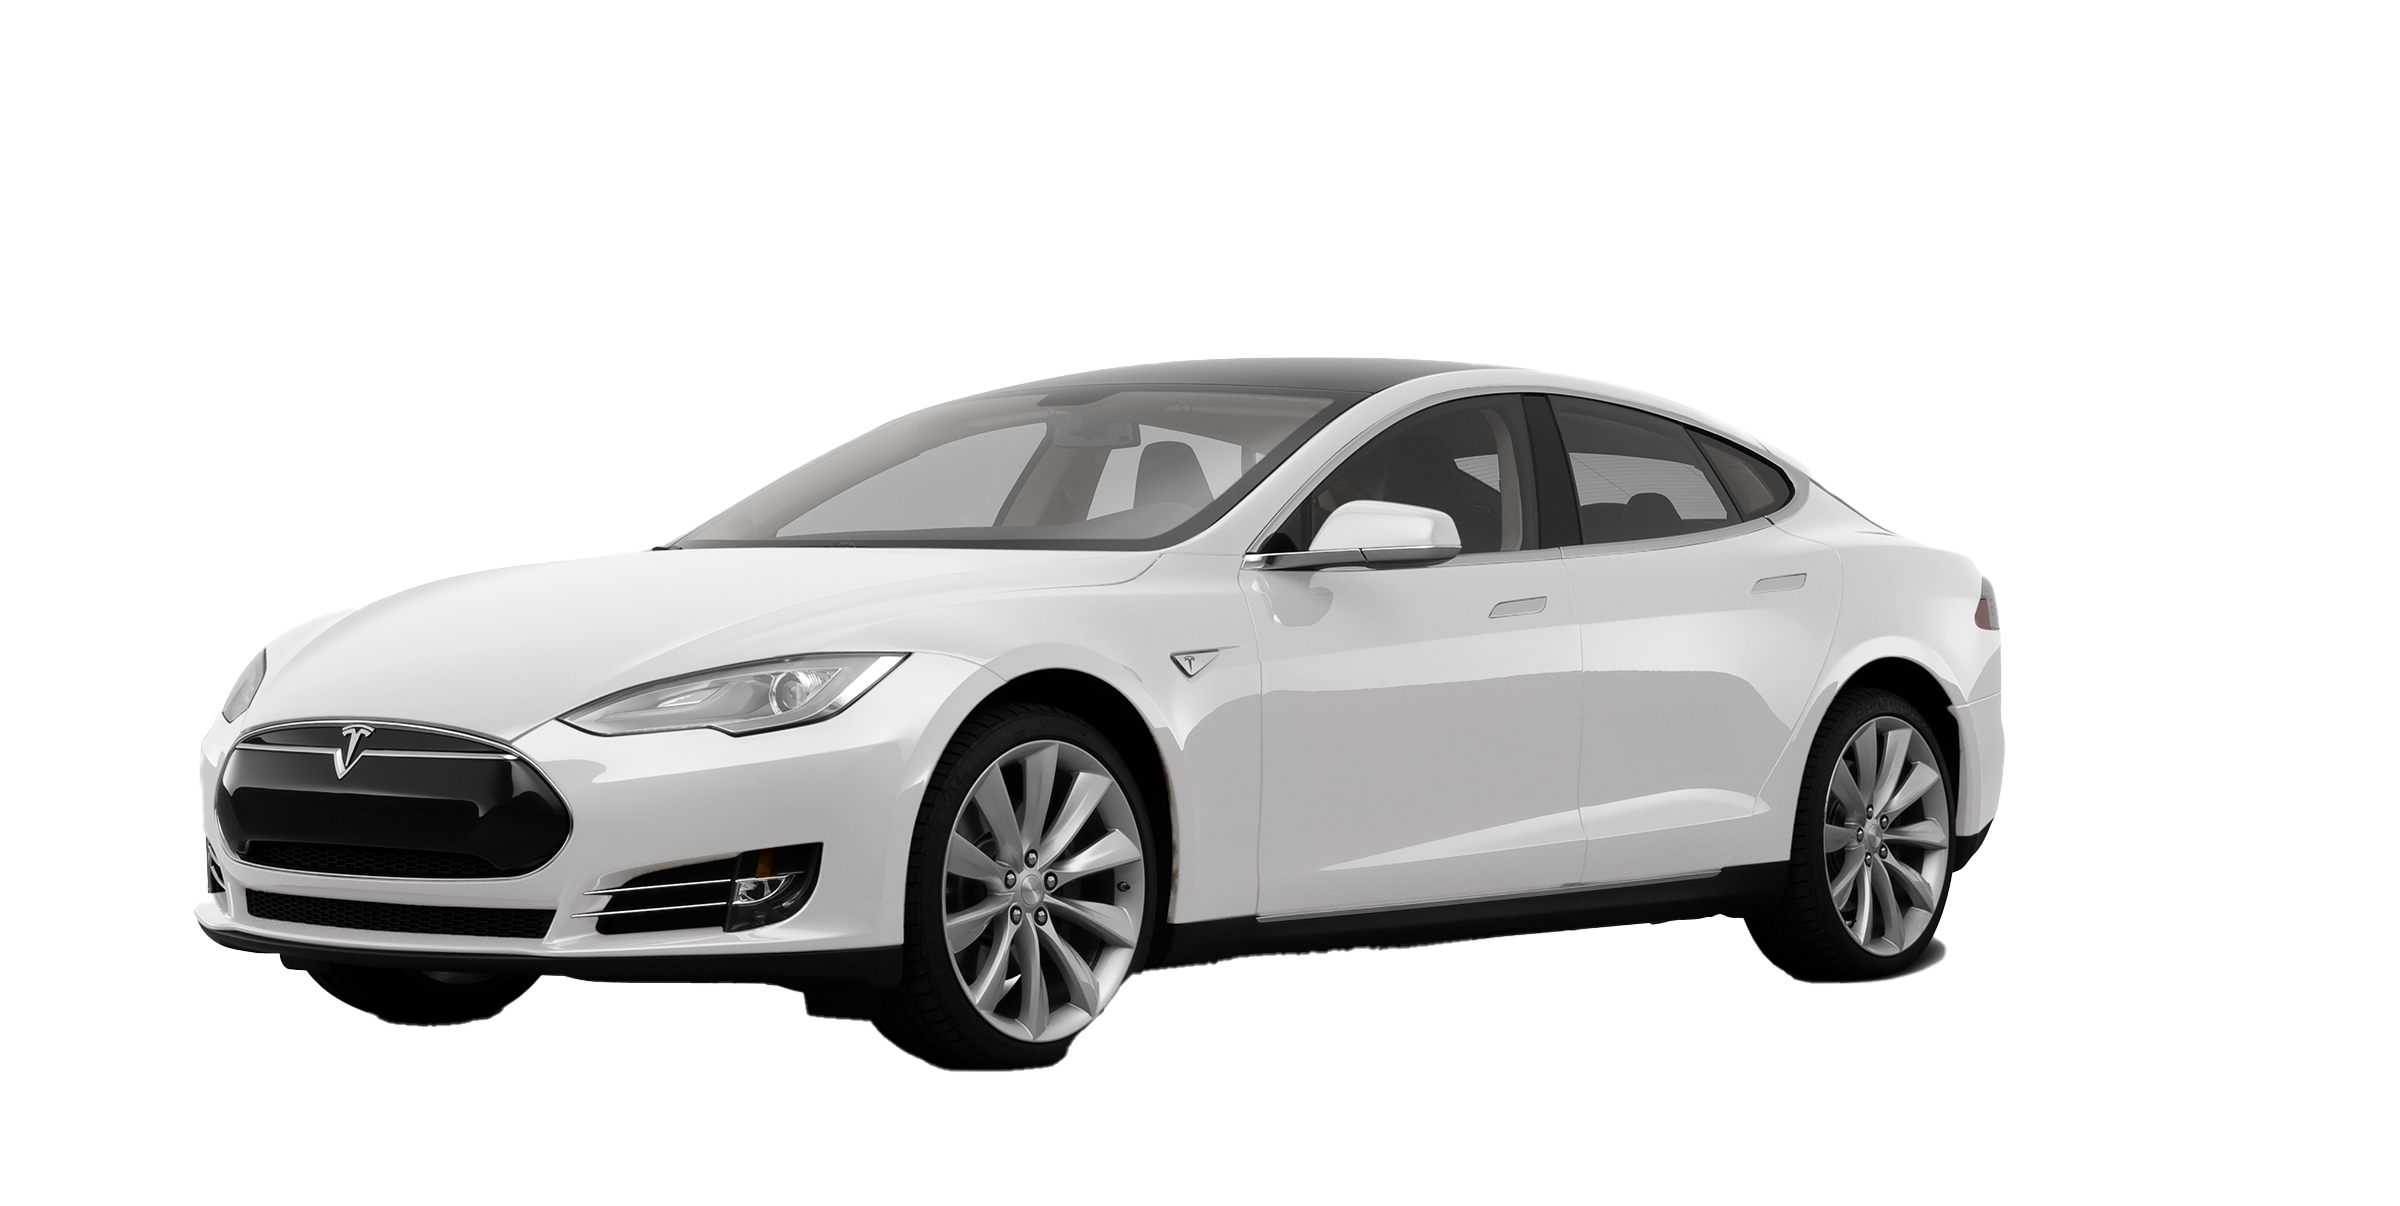 White Tesla PNG Image File